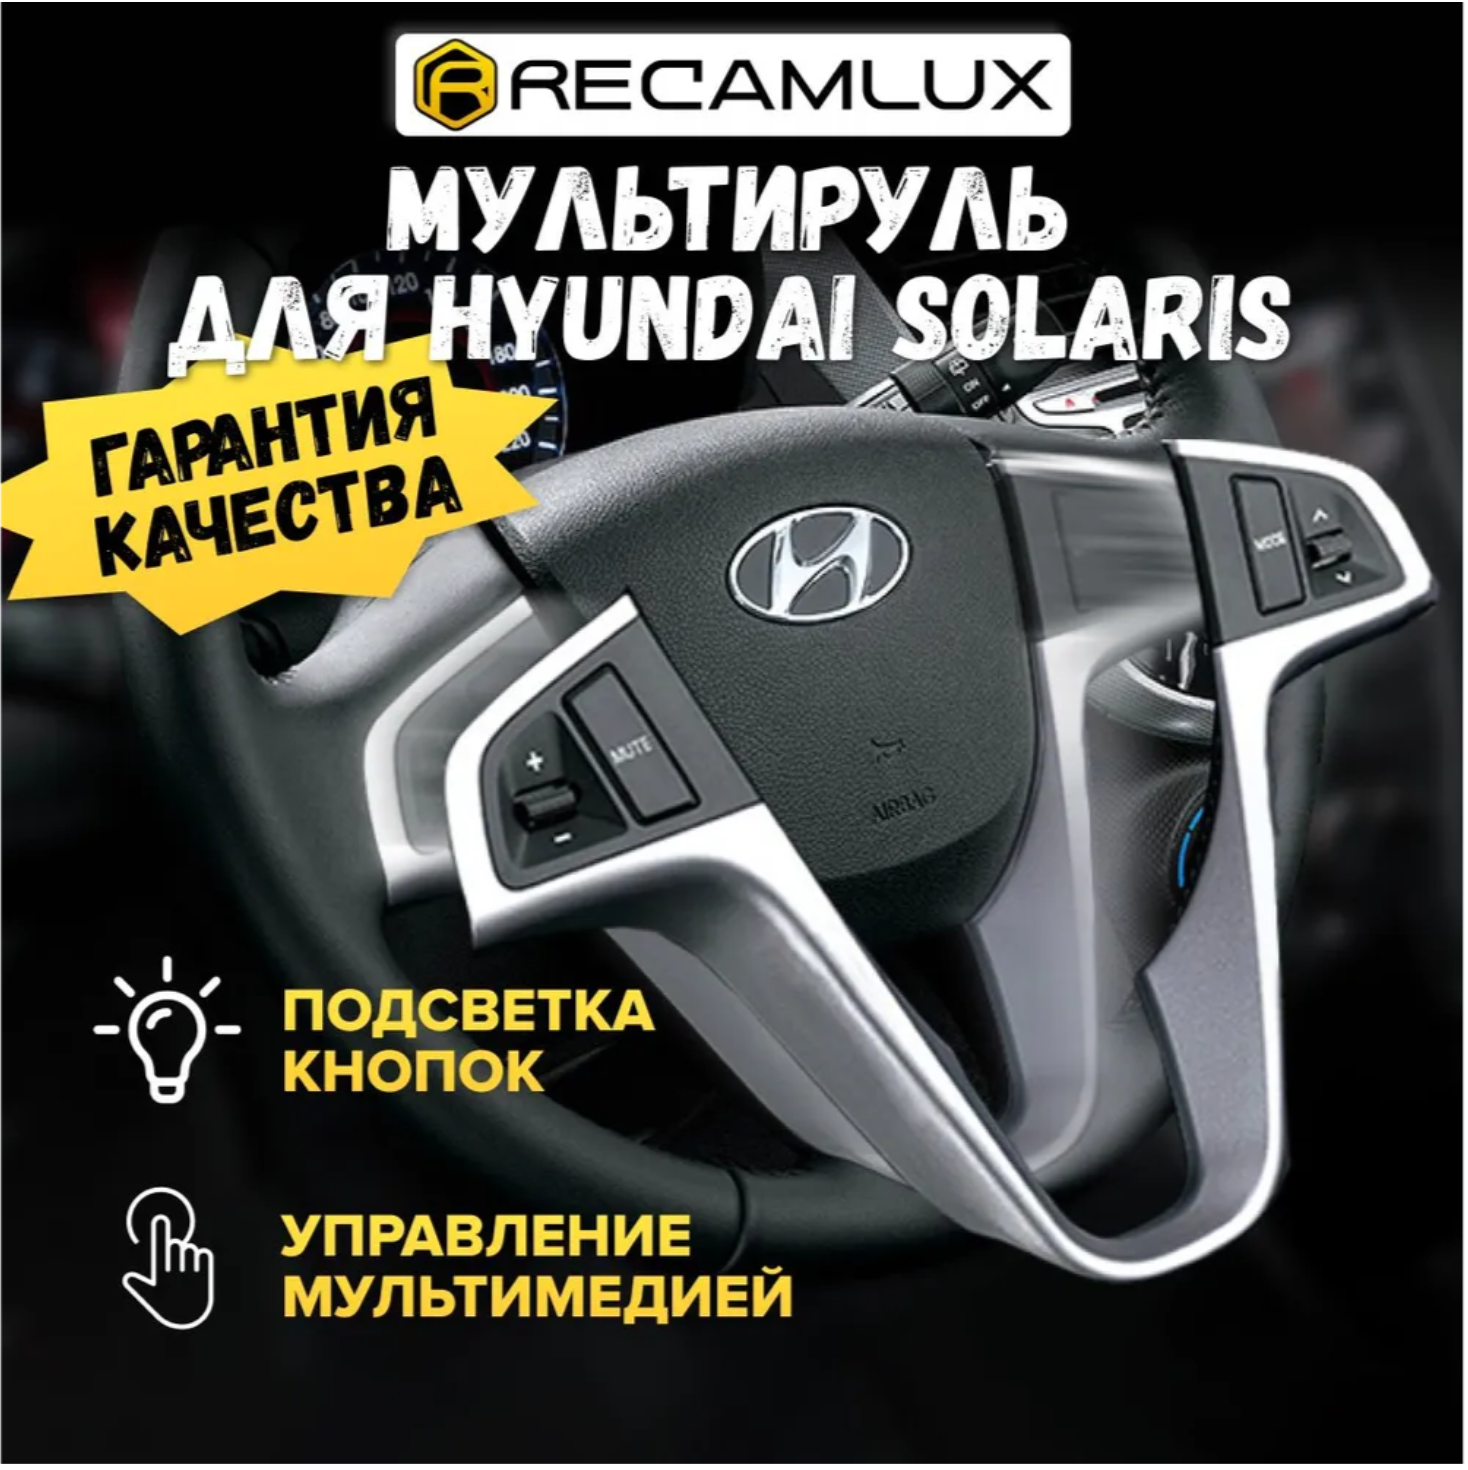 RecamLux / Кнопки на руль Hyundai Solaris с 2011 по 2016 / Кнопки управления с рамкой на рулевую колонку Хендай Солярис